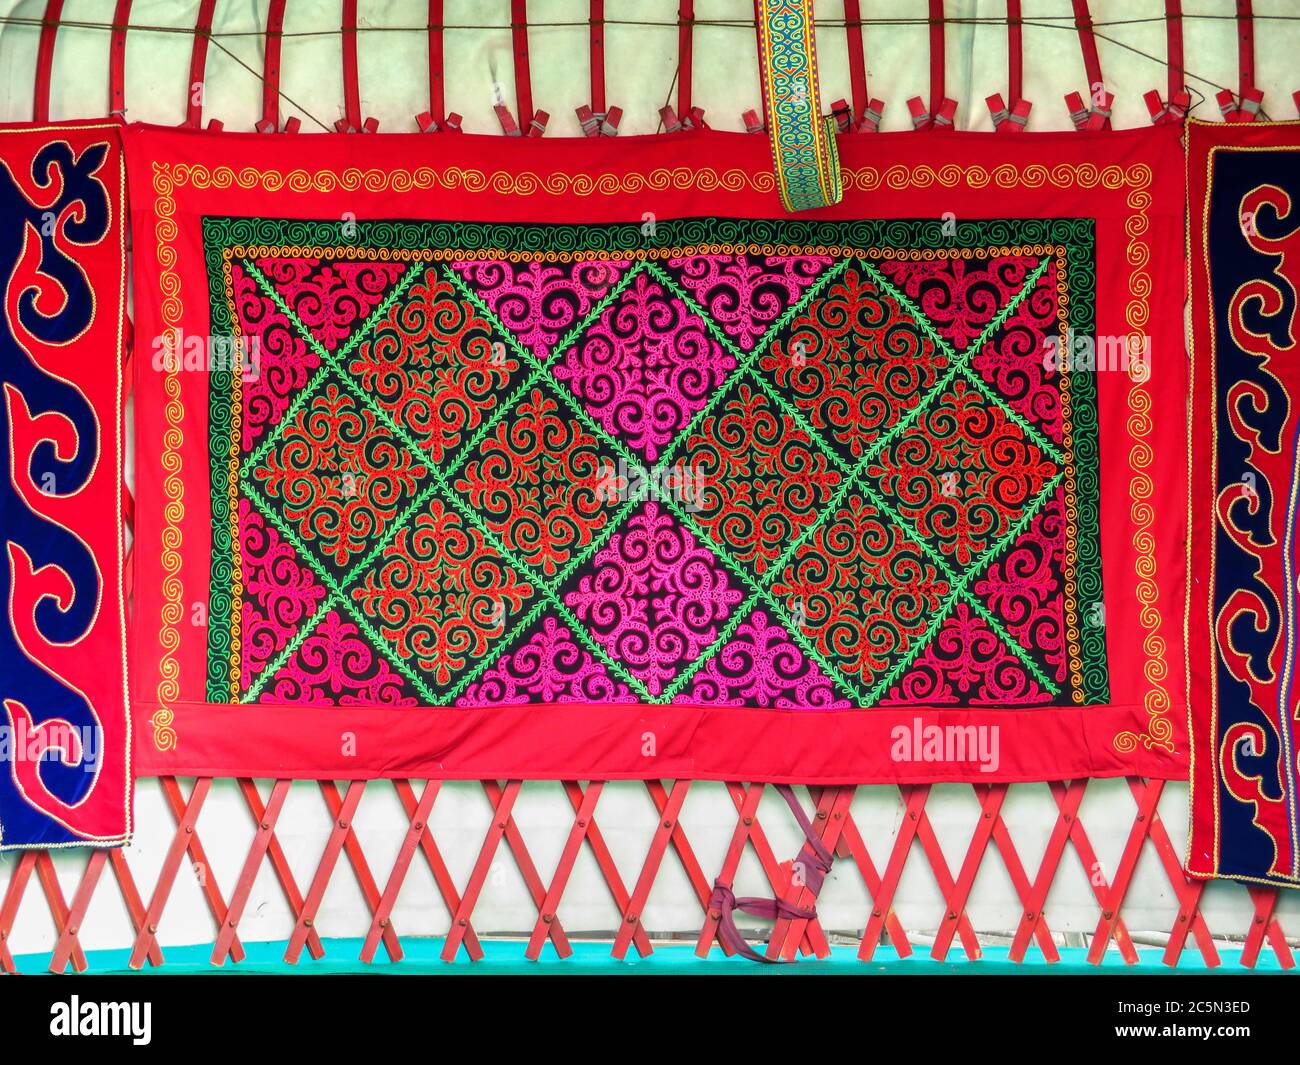 ALMATY, KAZAKHSTAN - MARCH 21, 2017: Kazakh felt carpet with ornament inside the yurt in Almaty, Kazakhstan  Almaty, Kazakhstan - March 21, 2017: Kaza Stock Photo